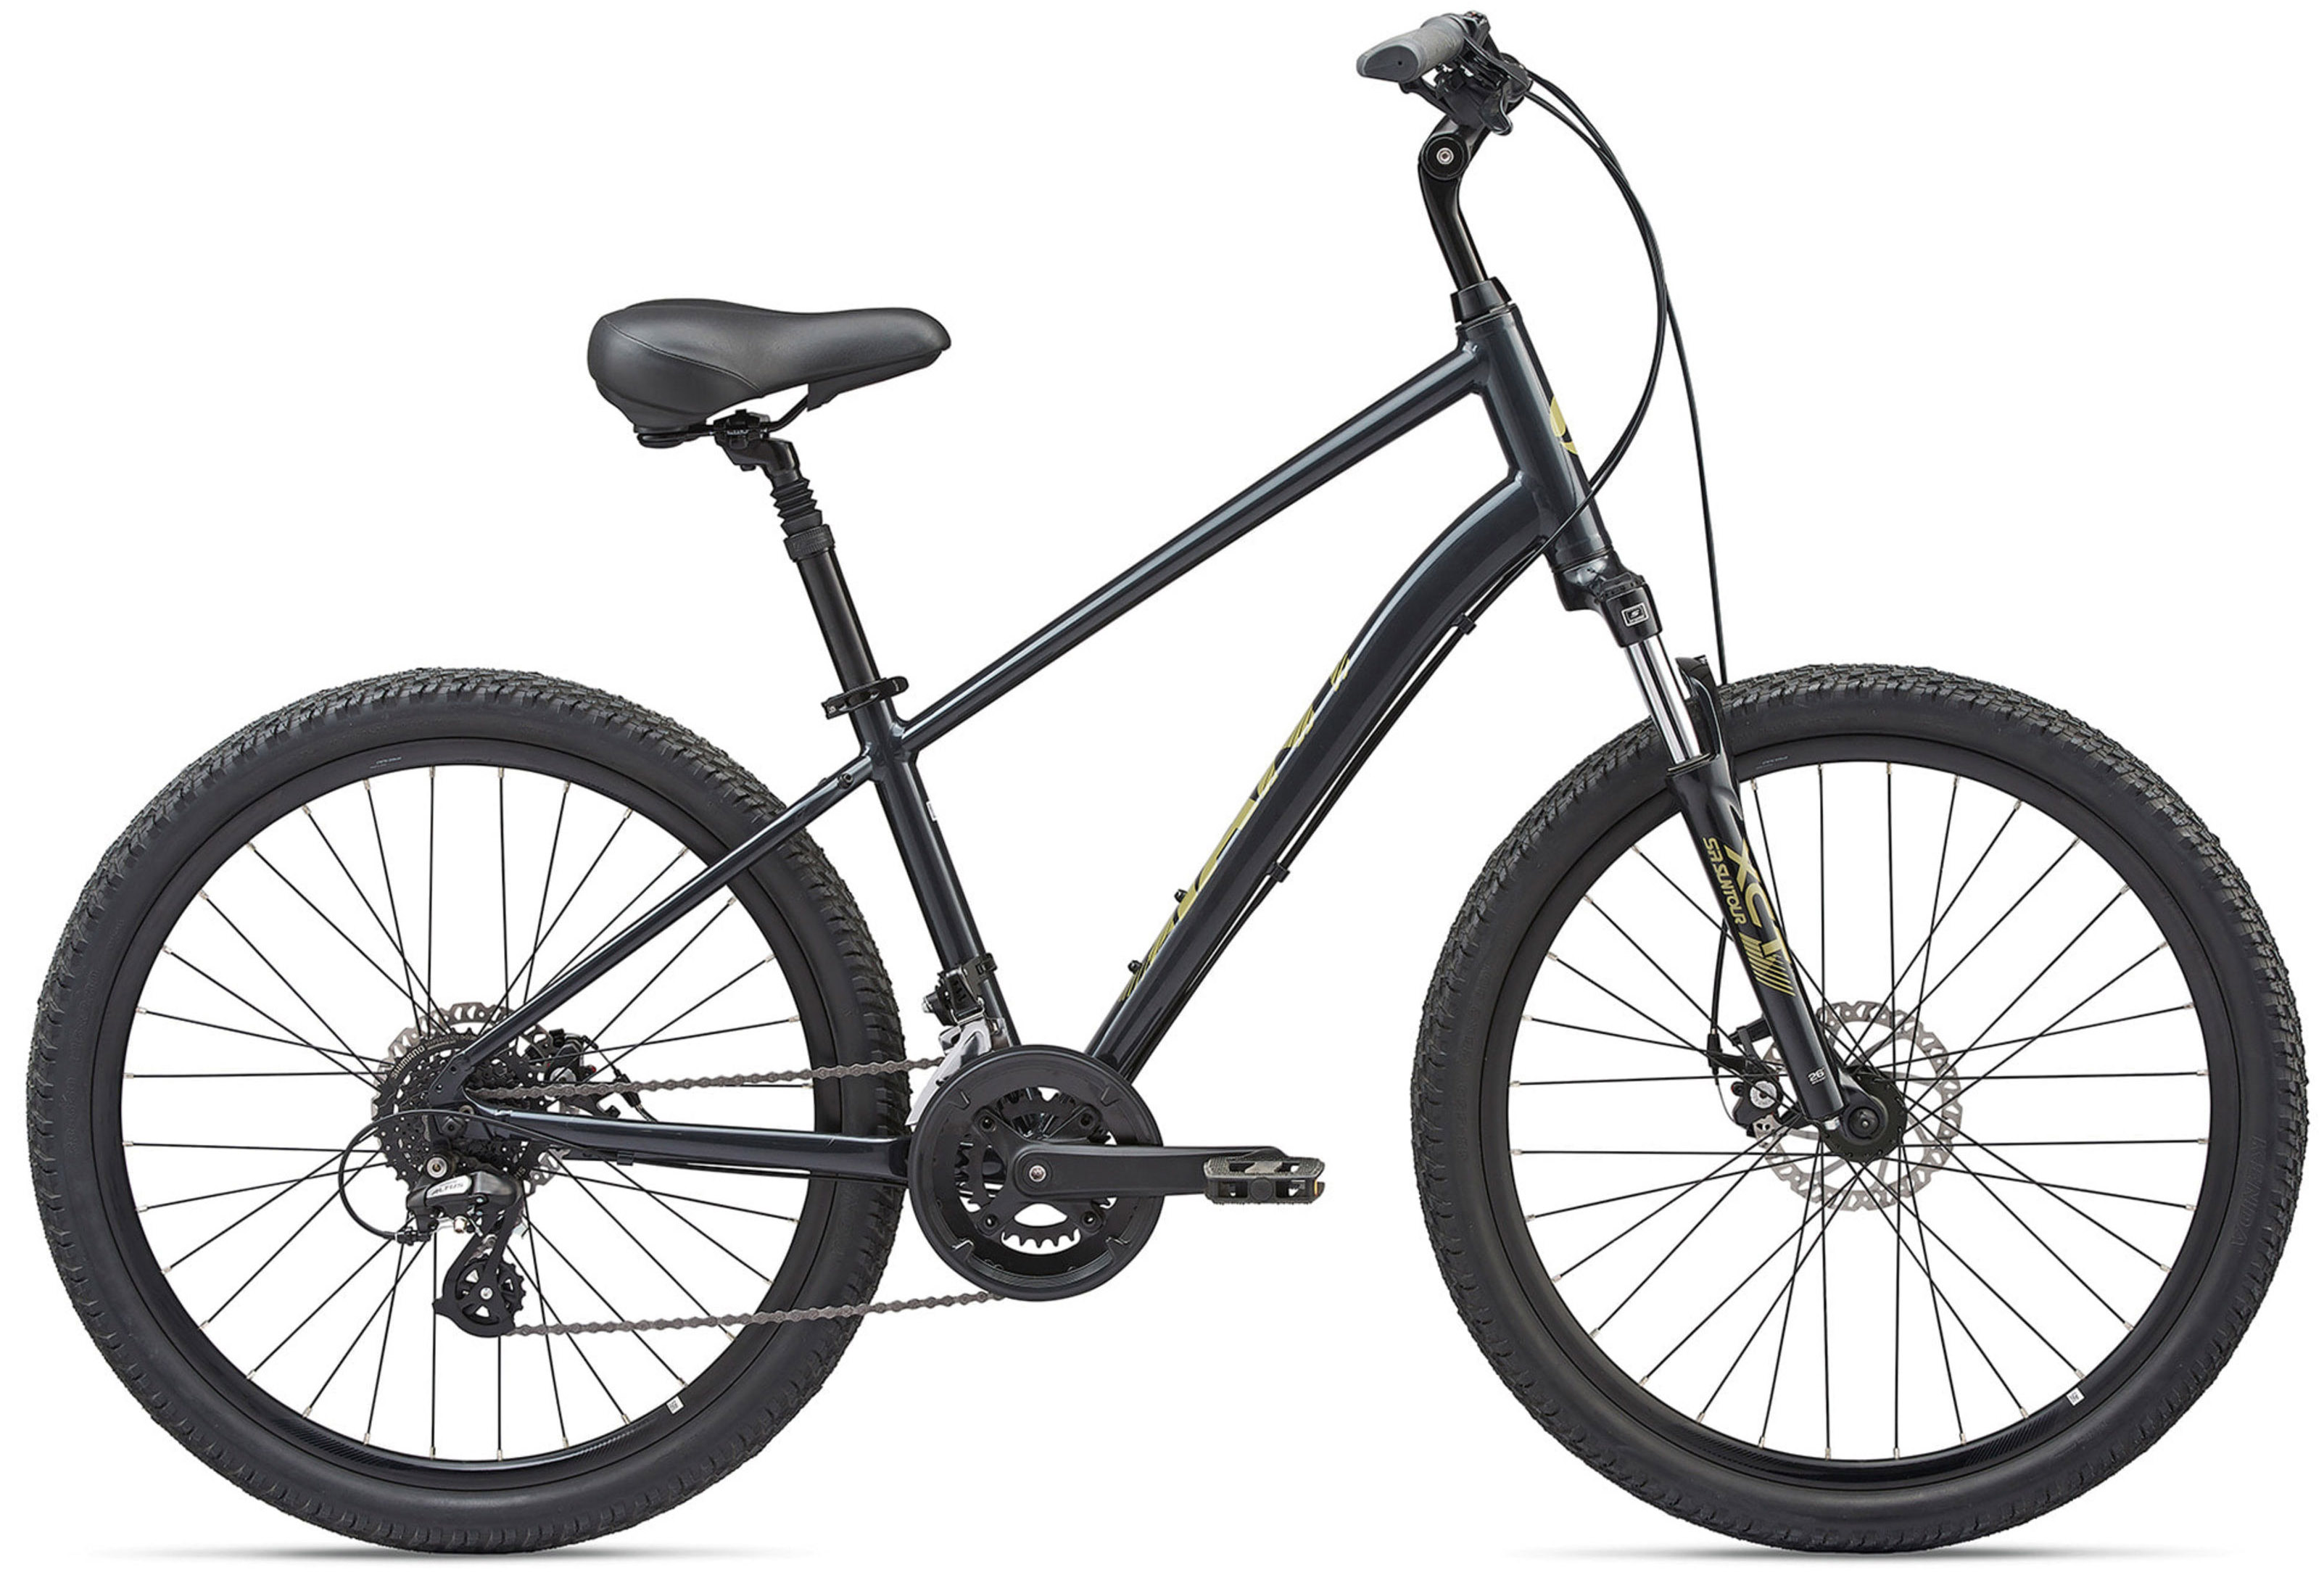  Велосипед Giant Sedona DX (2021) 2021